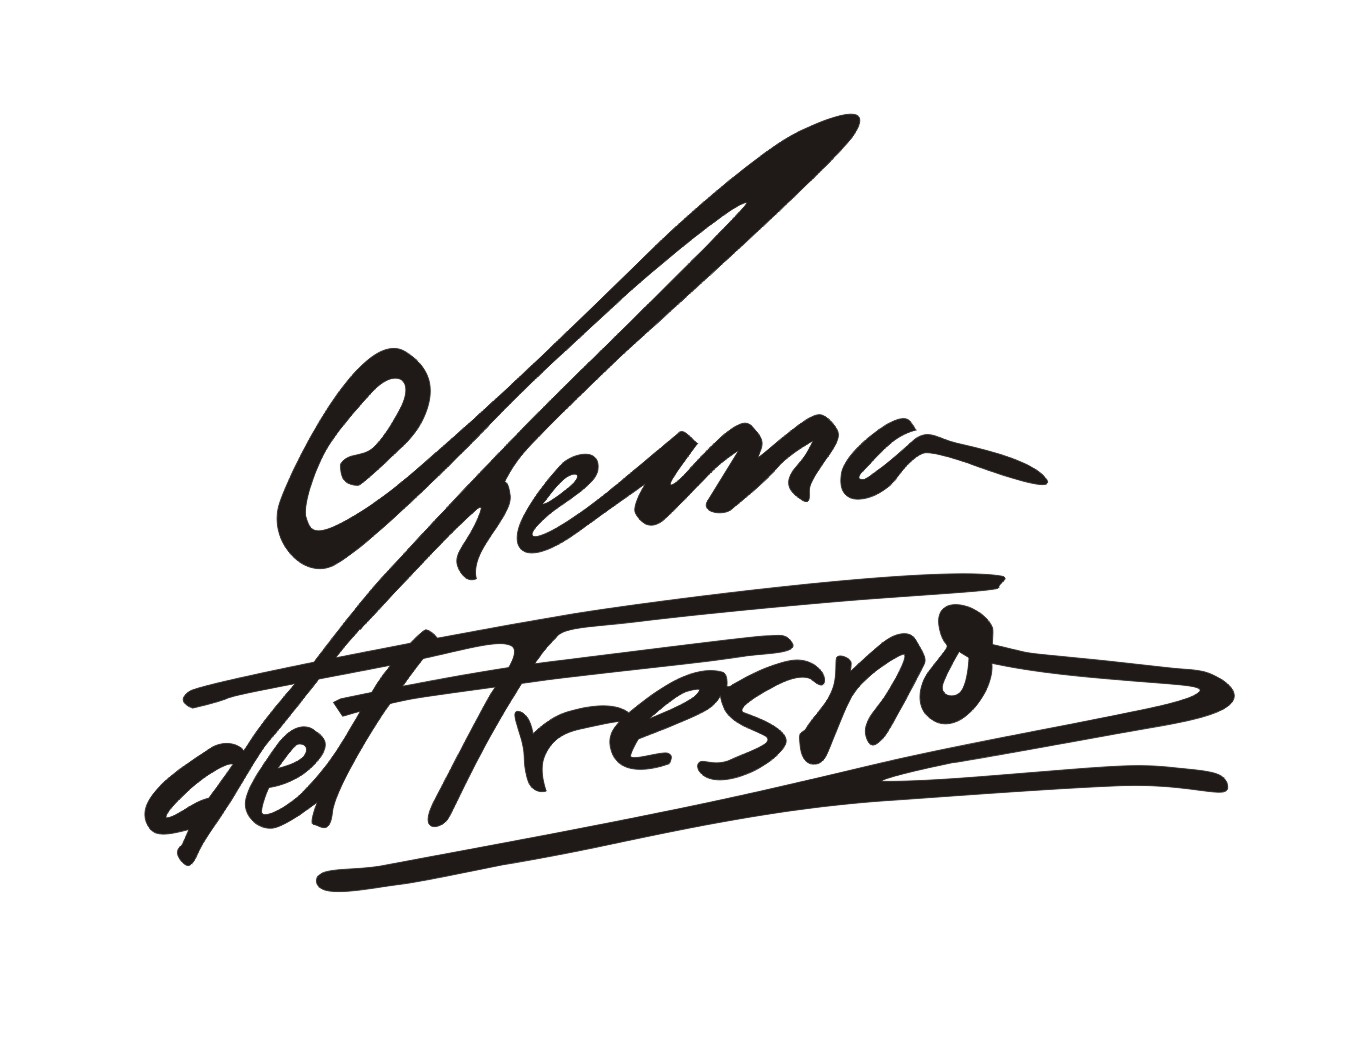 Chema Del Fresno | Diseño & Interiorismo